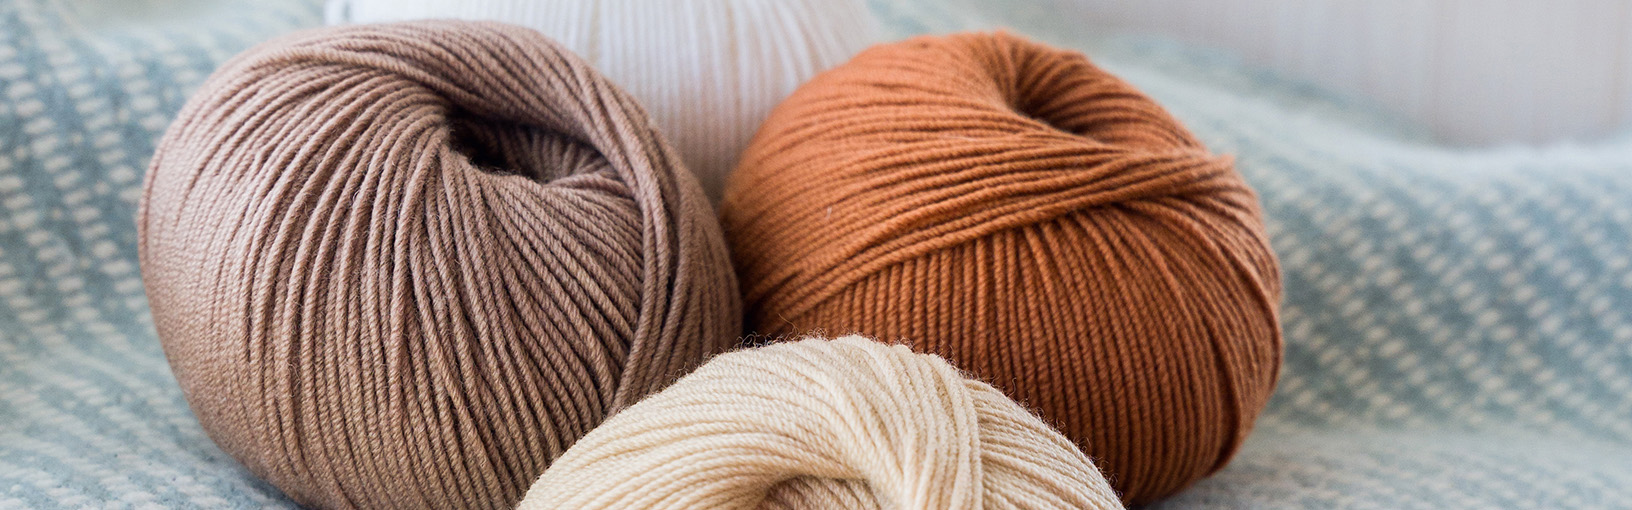 Hilos de alta calidad para tejer, crochet y fieltro Hilos Lana Grossa | Tweed